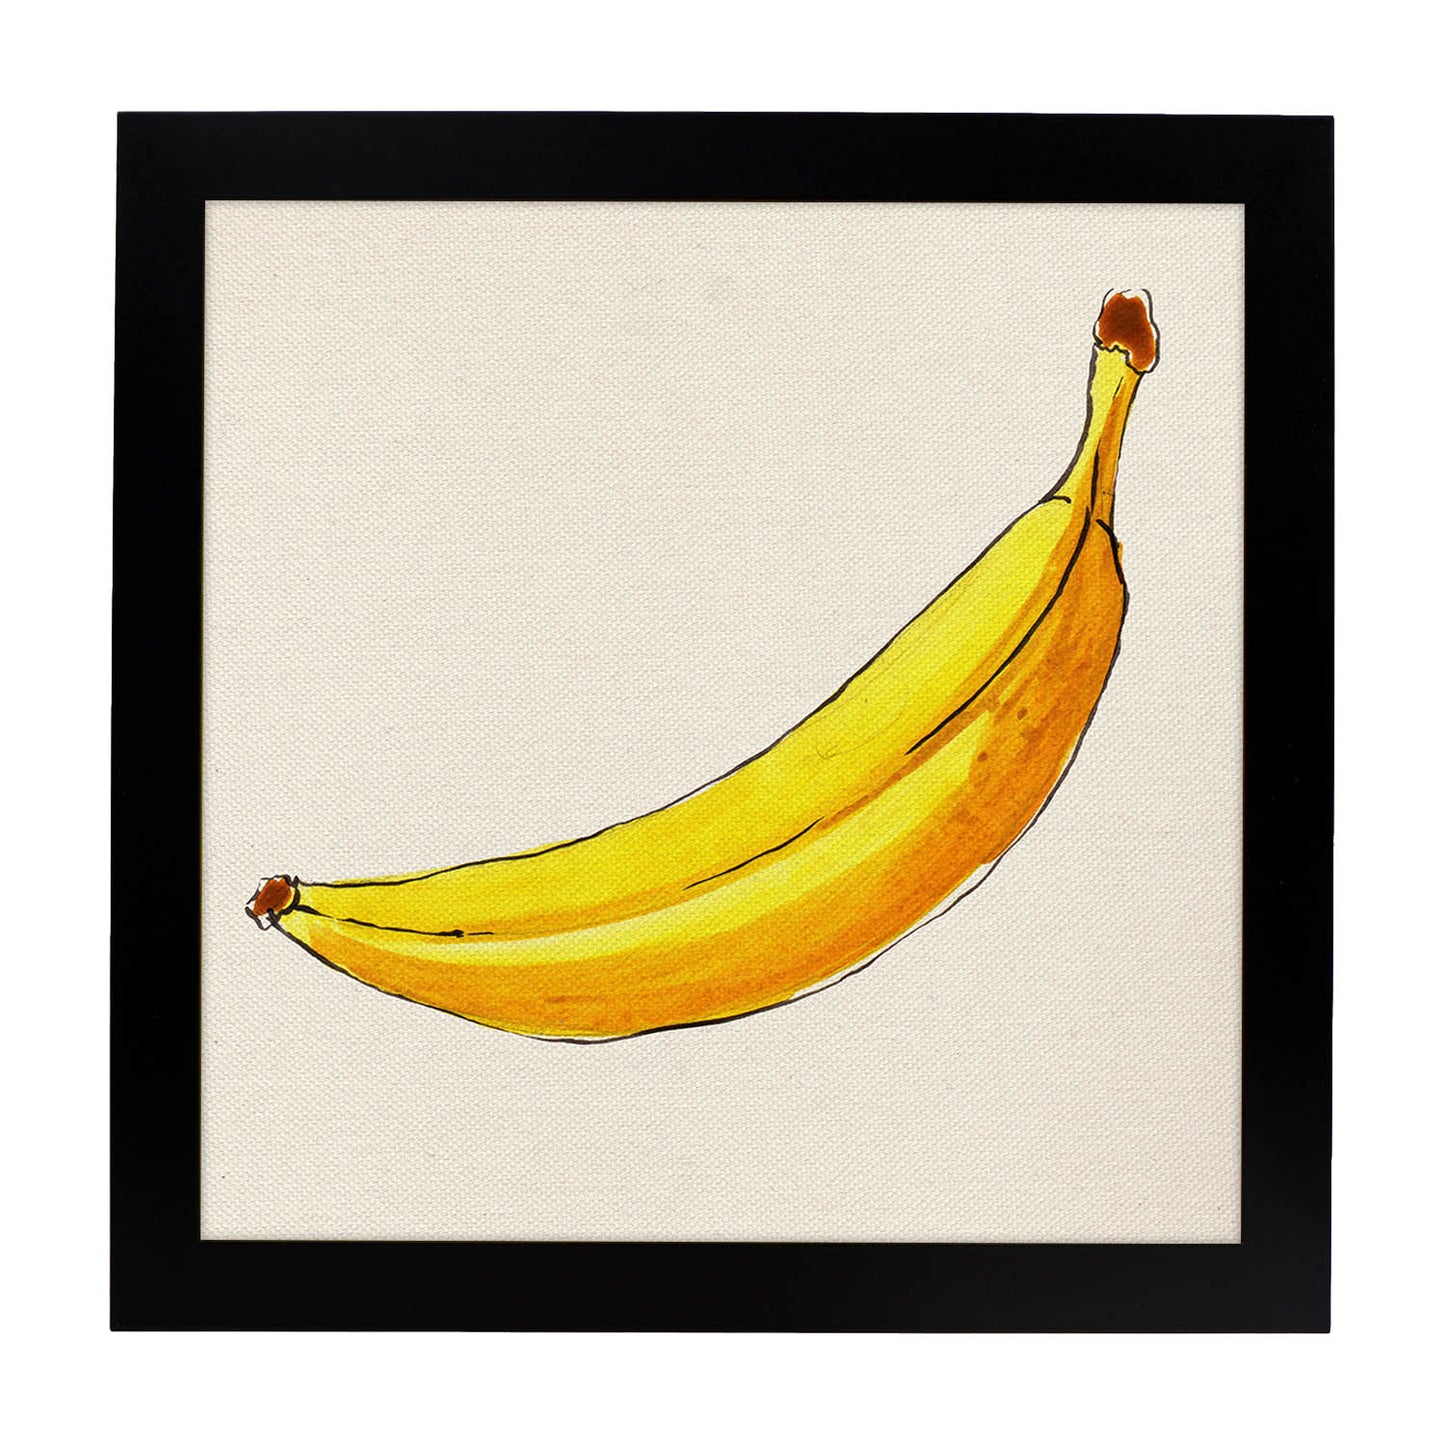 Poster cuadrado de Banana solitaria. Lámina de frutas y verduras de forma cuadrada, ilustrada con dibujos a color.-Artwork-Nacnic-25x25 cm-Marco Negro-Nacnic Estudio SL